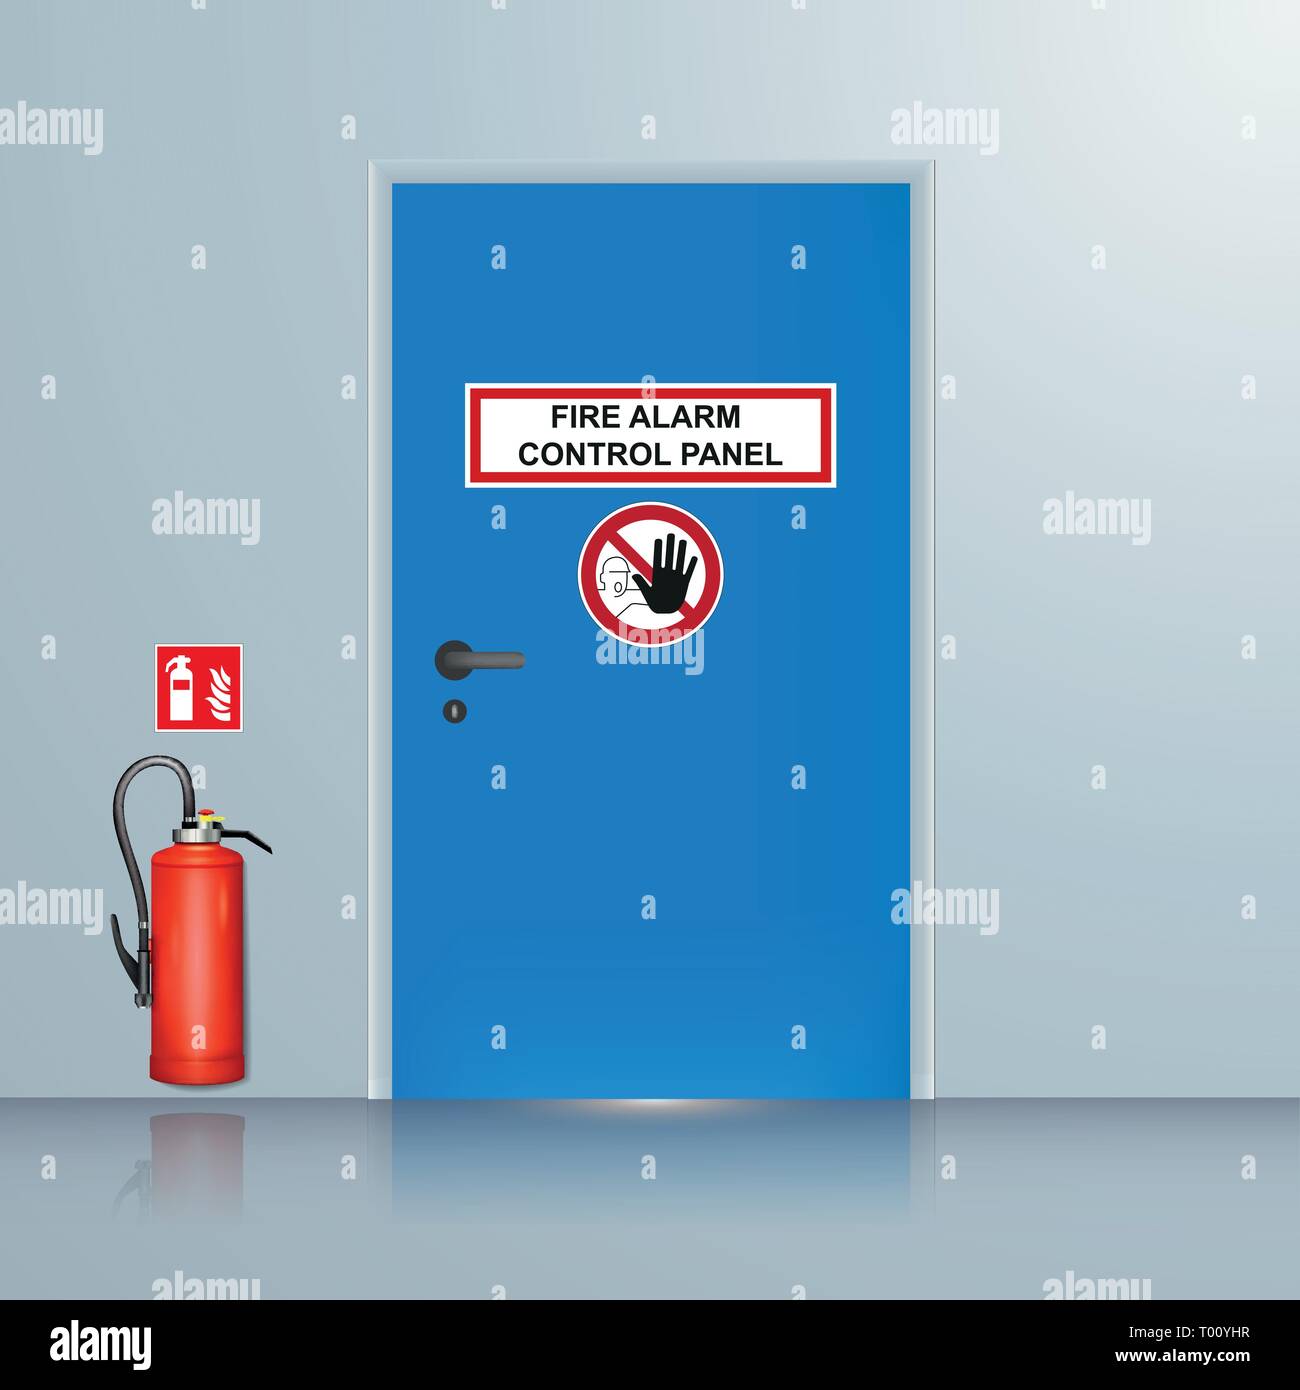 fire alarm system room vector illustration Stock Vector